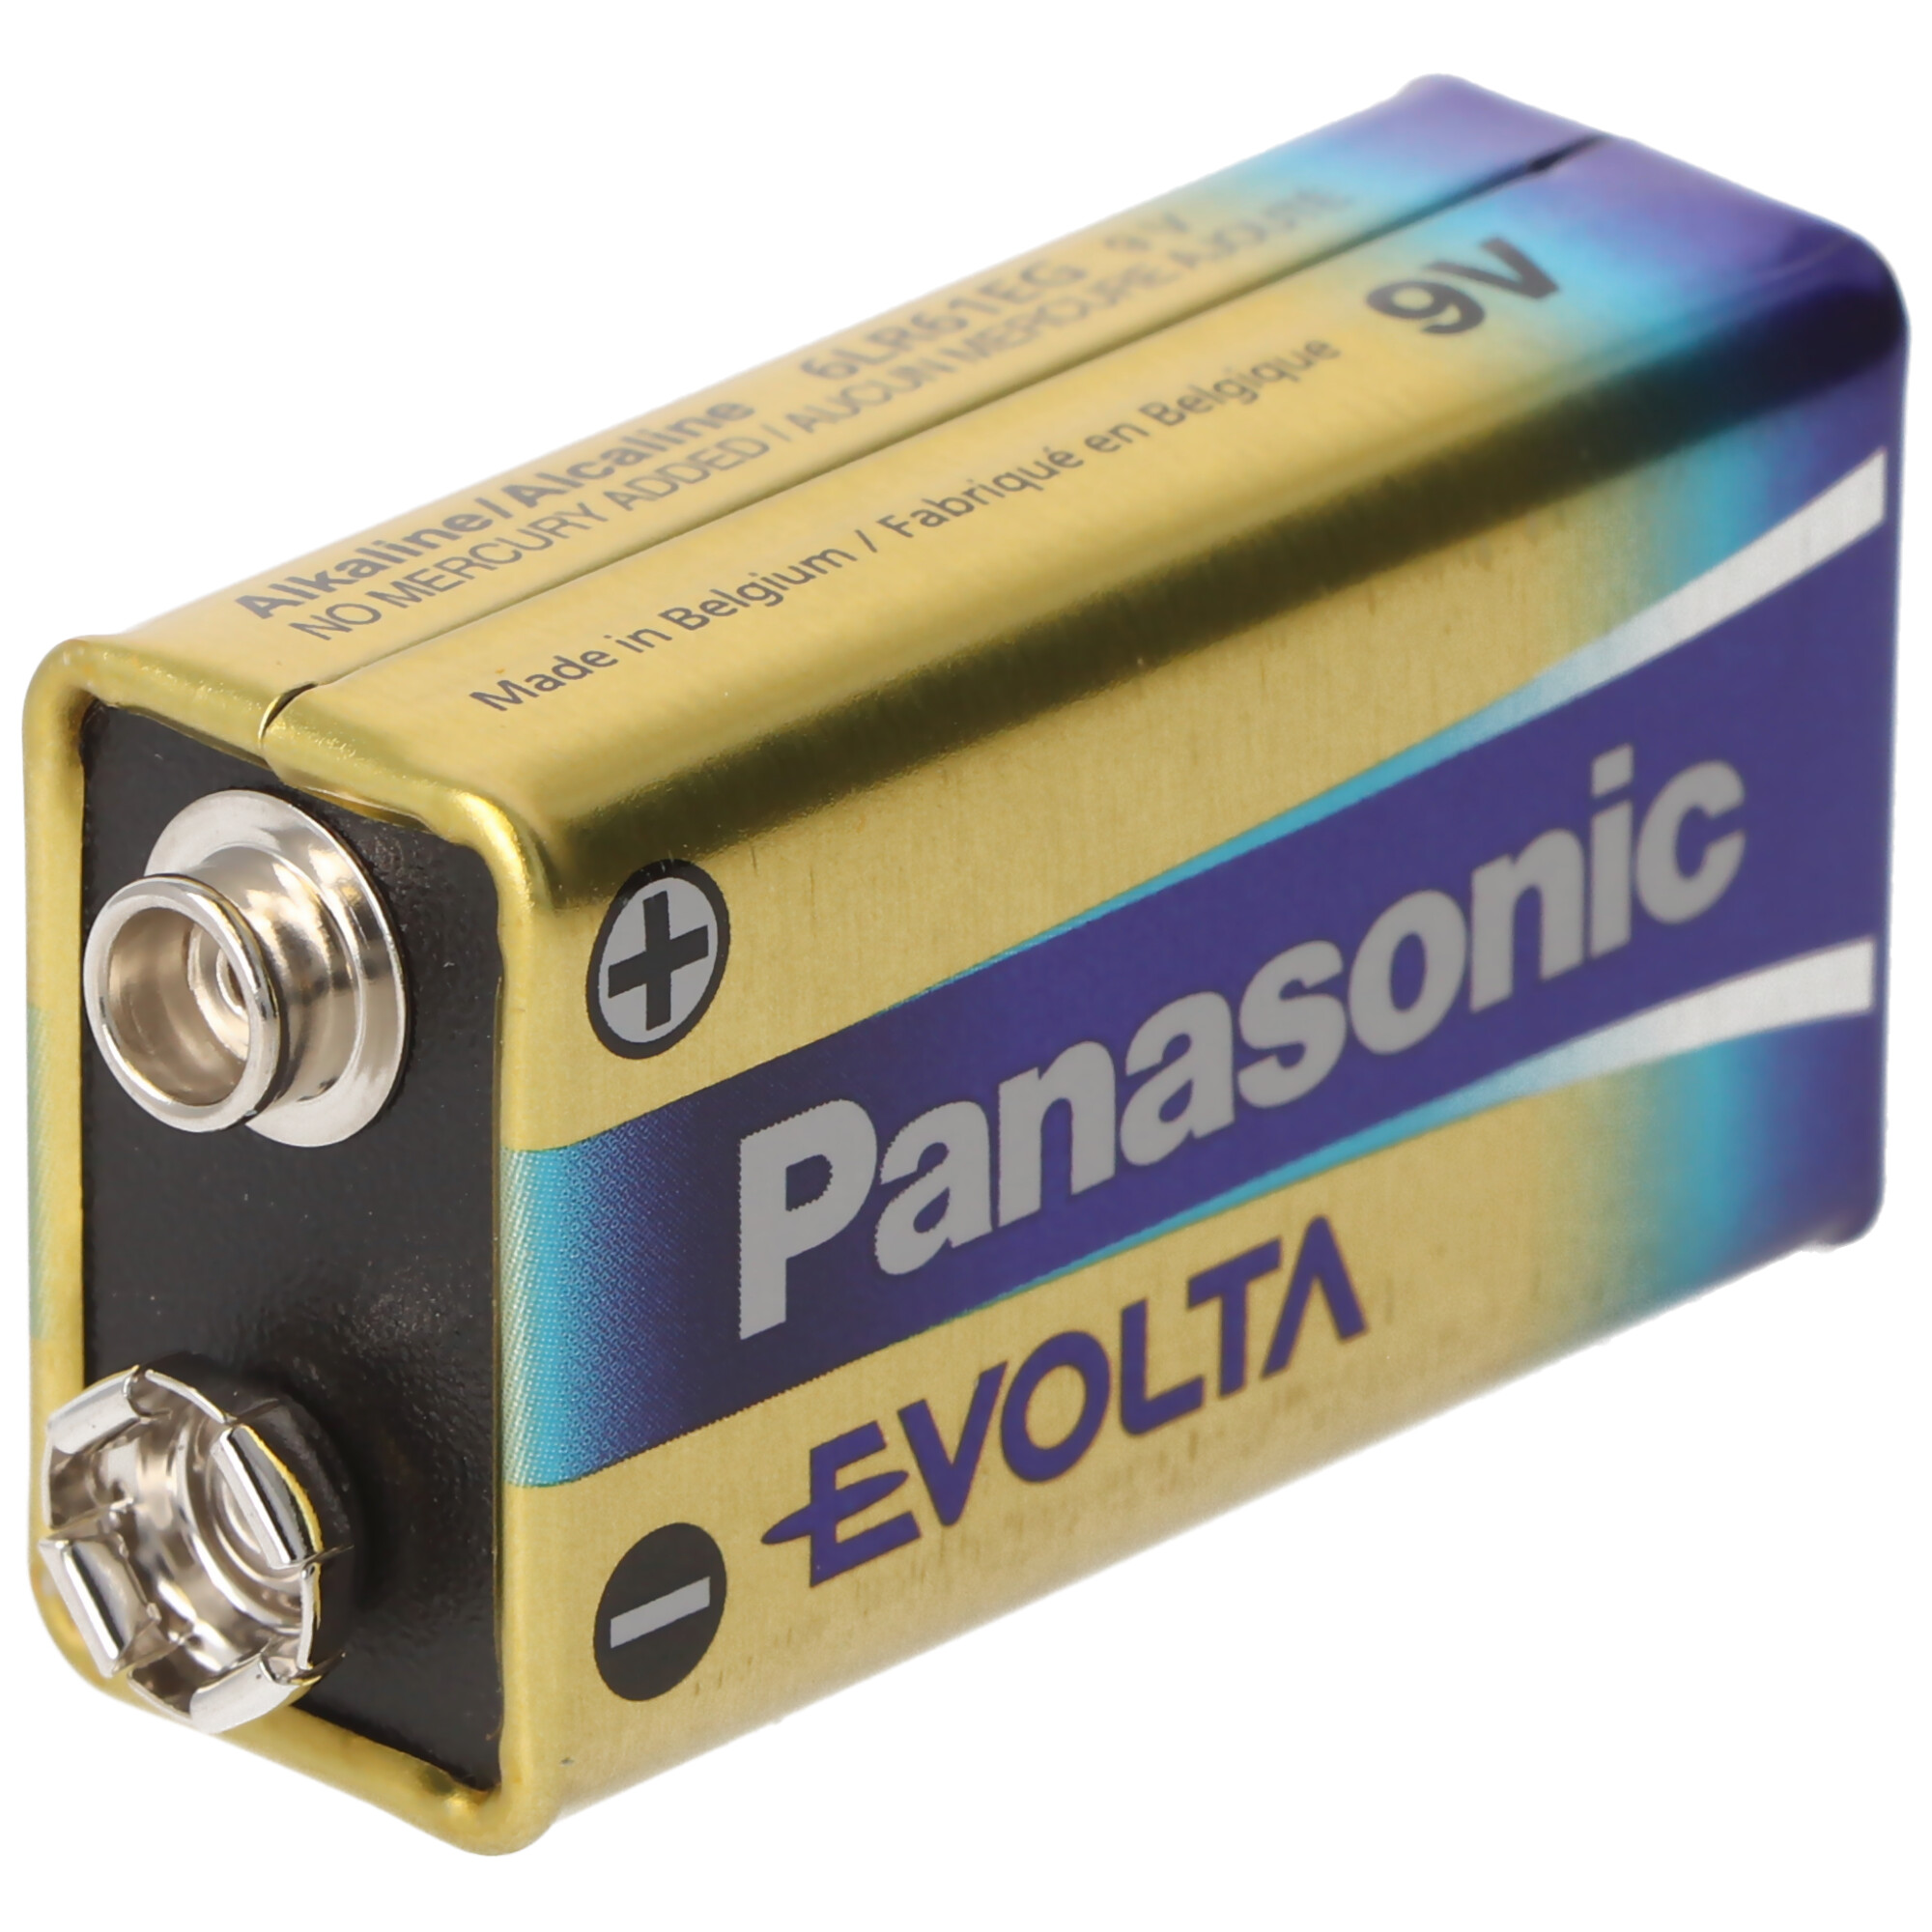 Panasonic Evolta 9V-Block, Alkaline Batterie, 9V Batterie ideal für Rauchmelder, Fernbedienungen